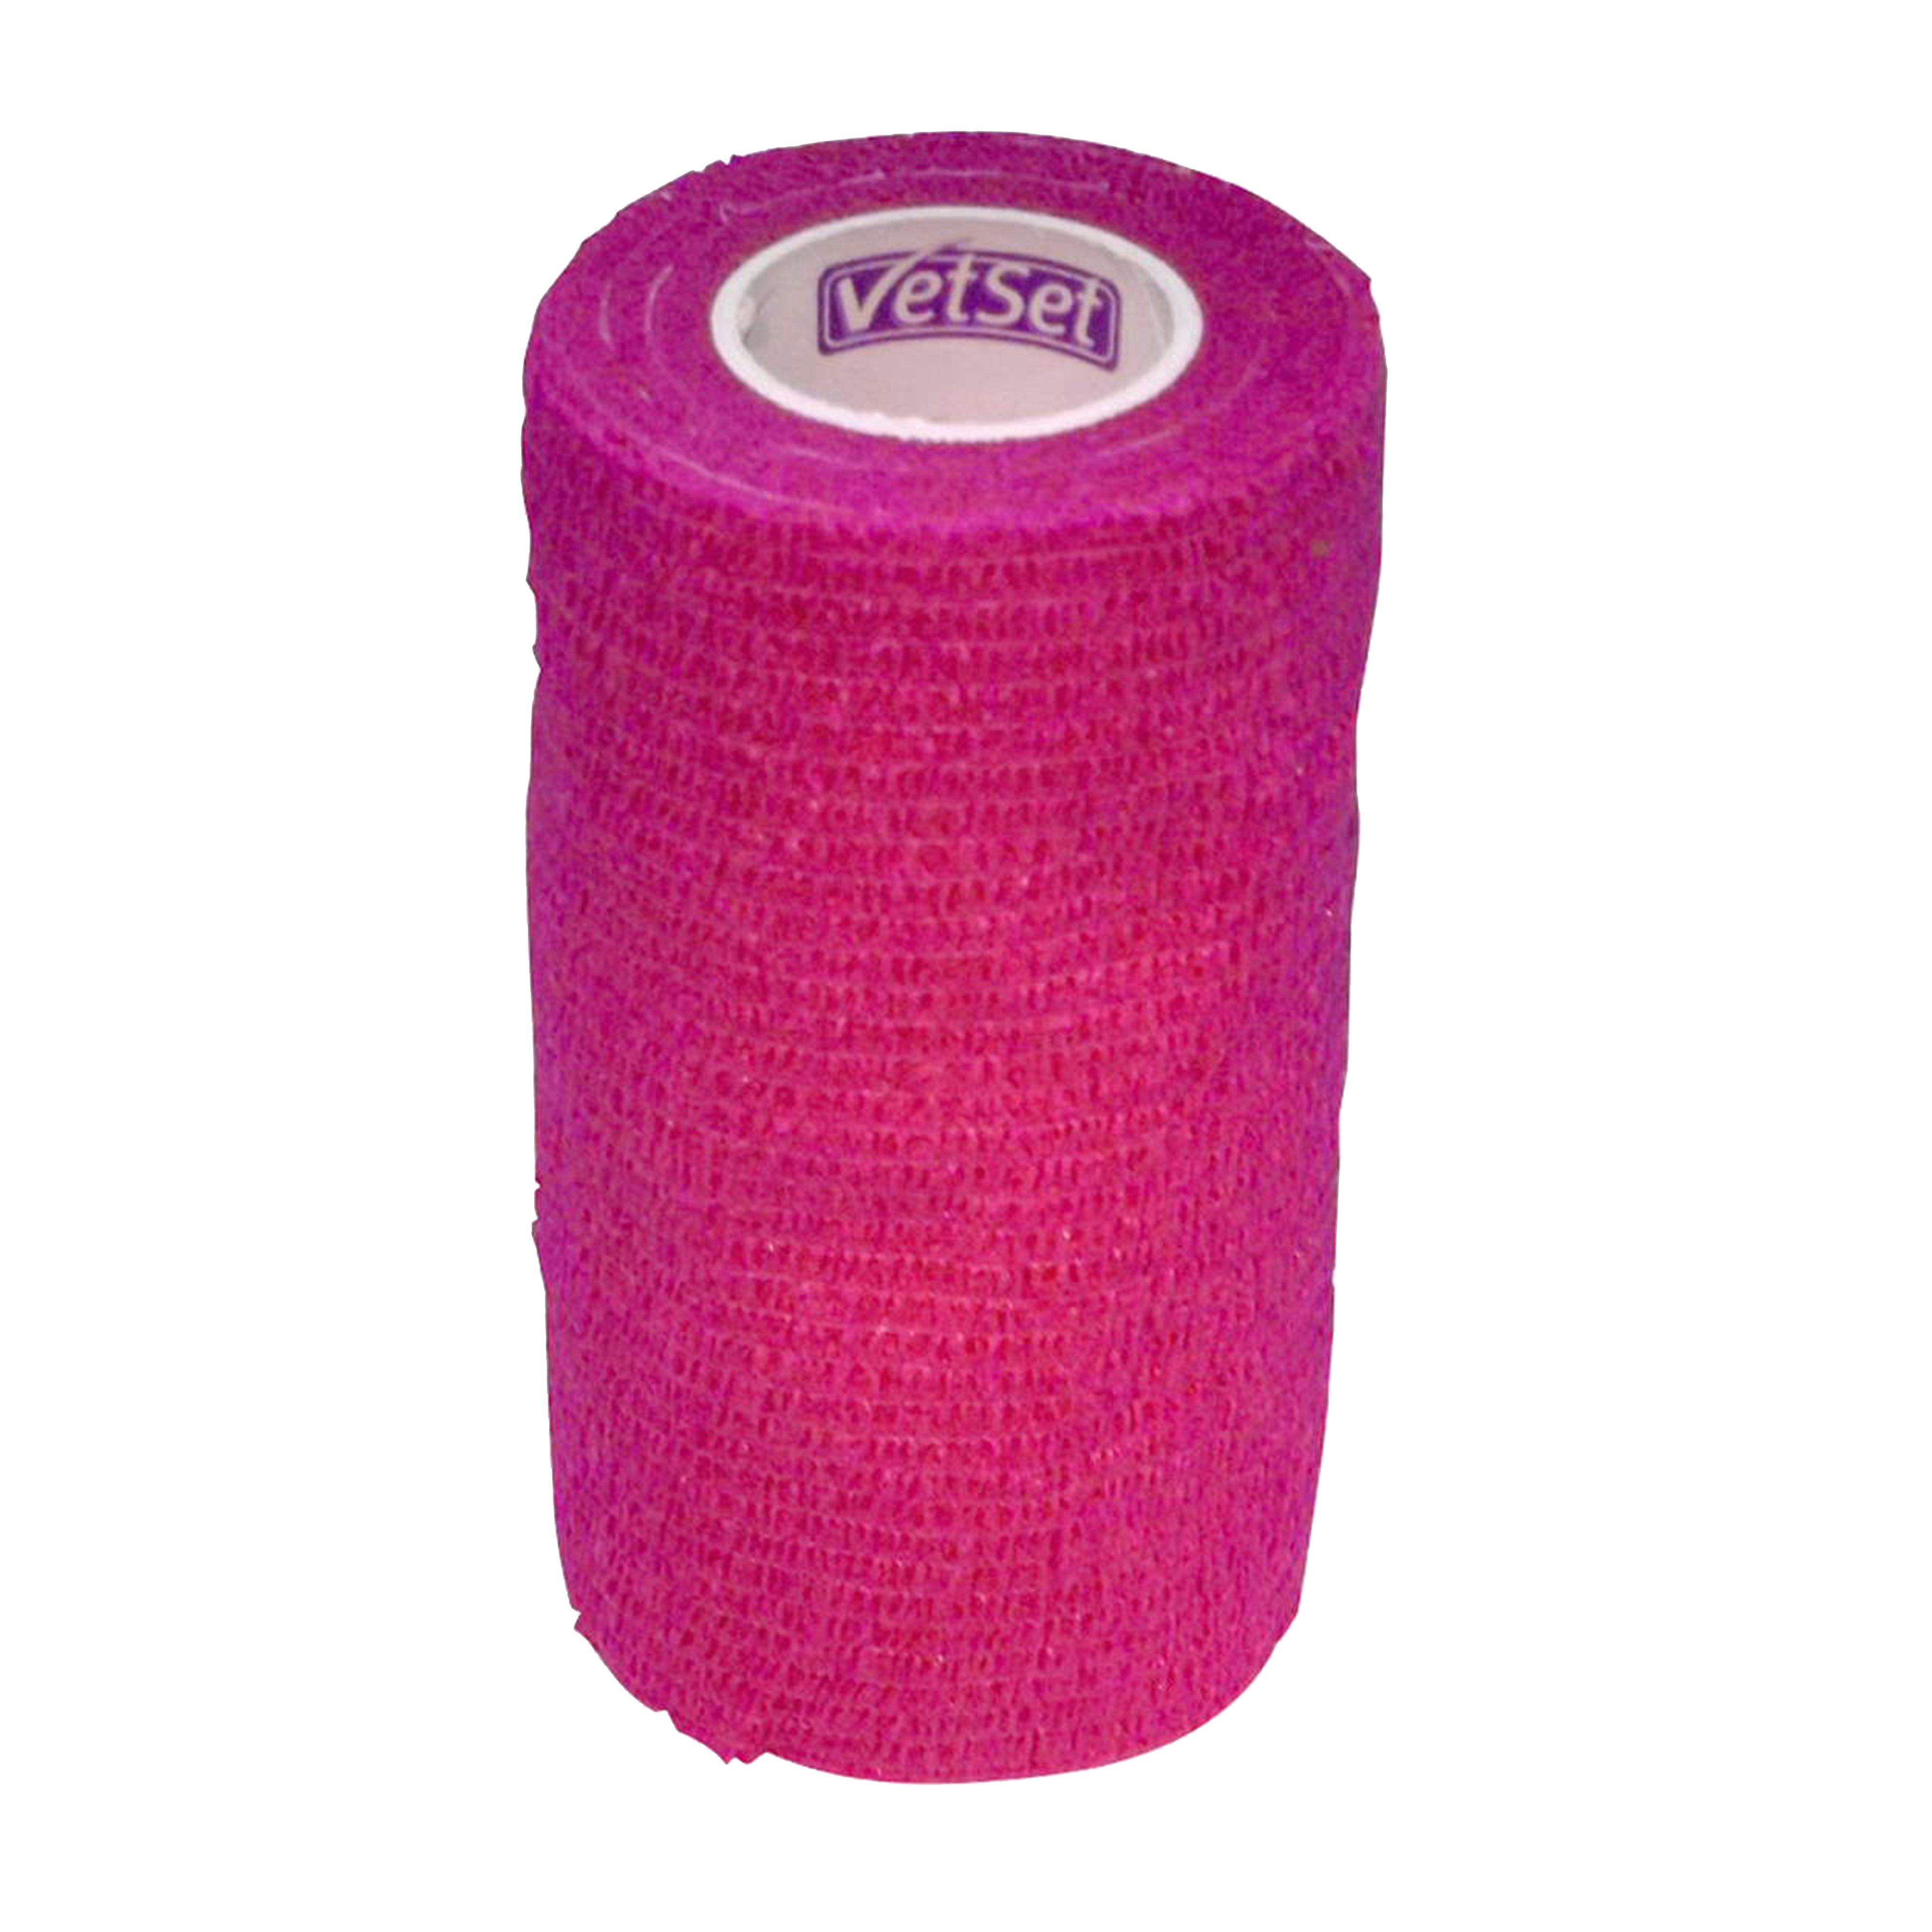 Wraptec Cohesive Bandage Pink